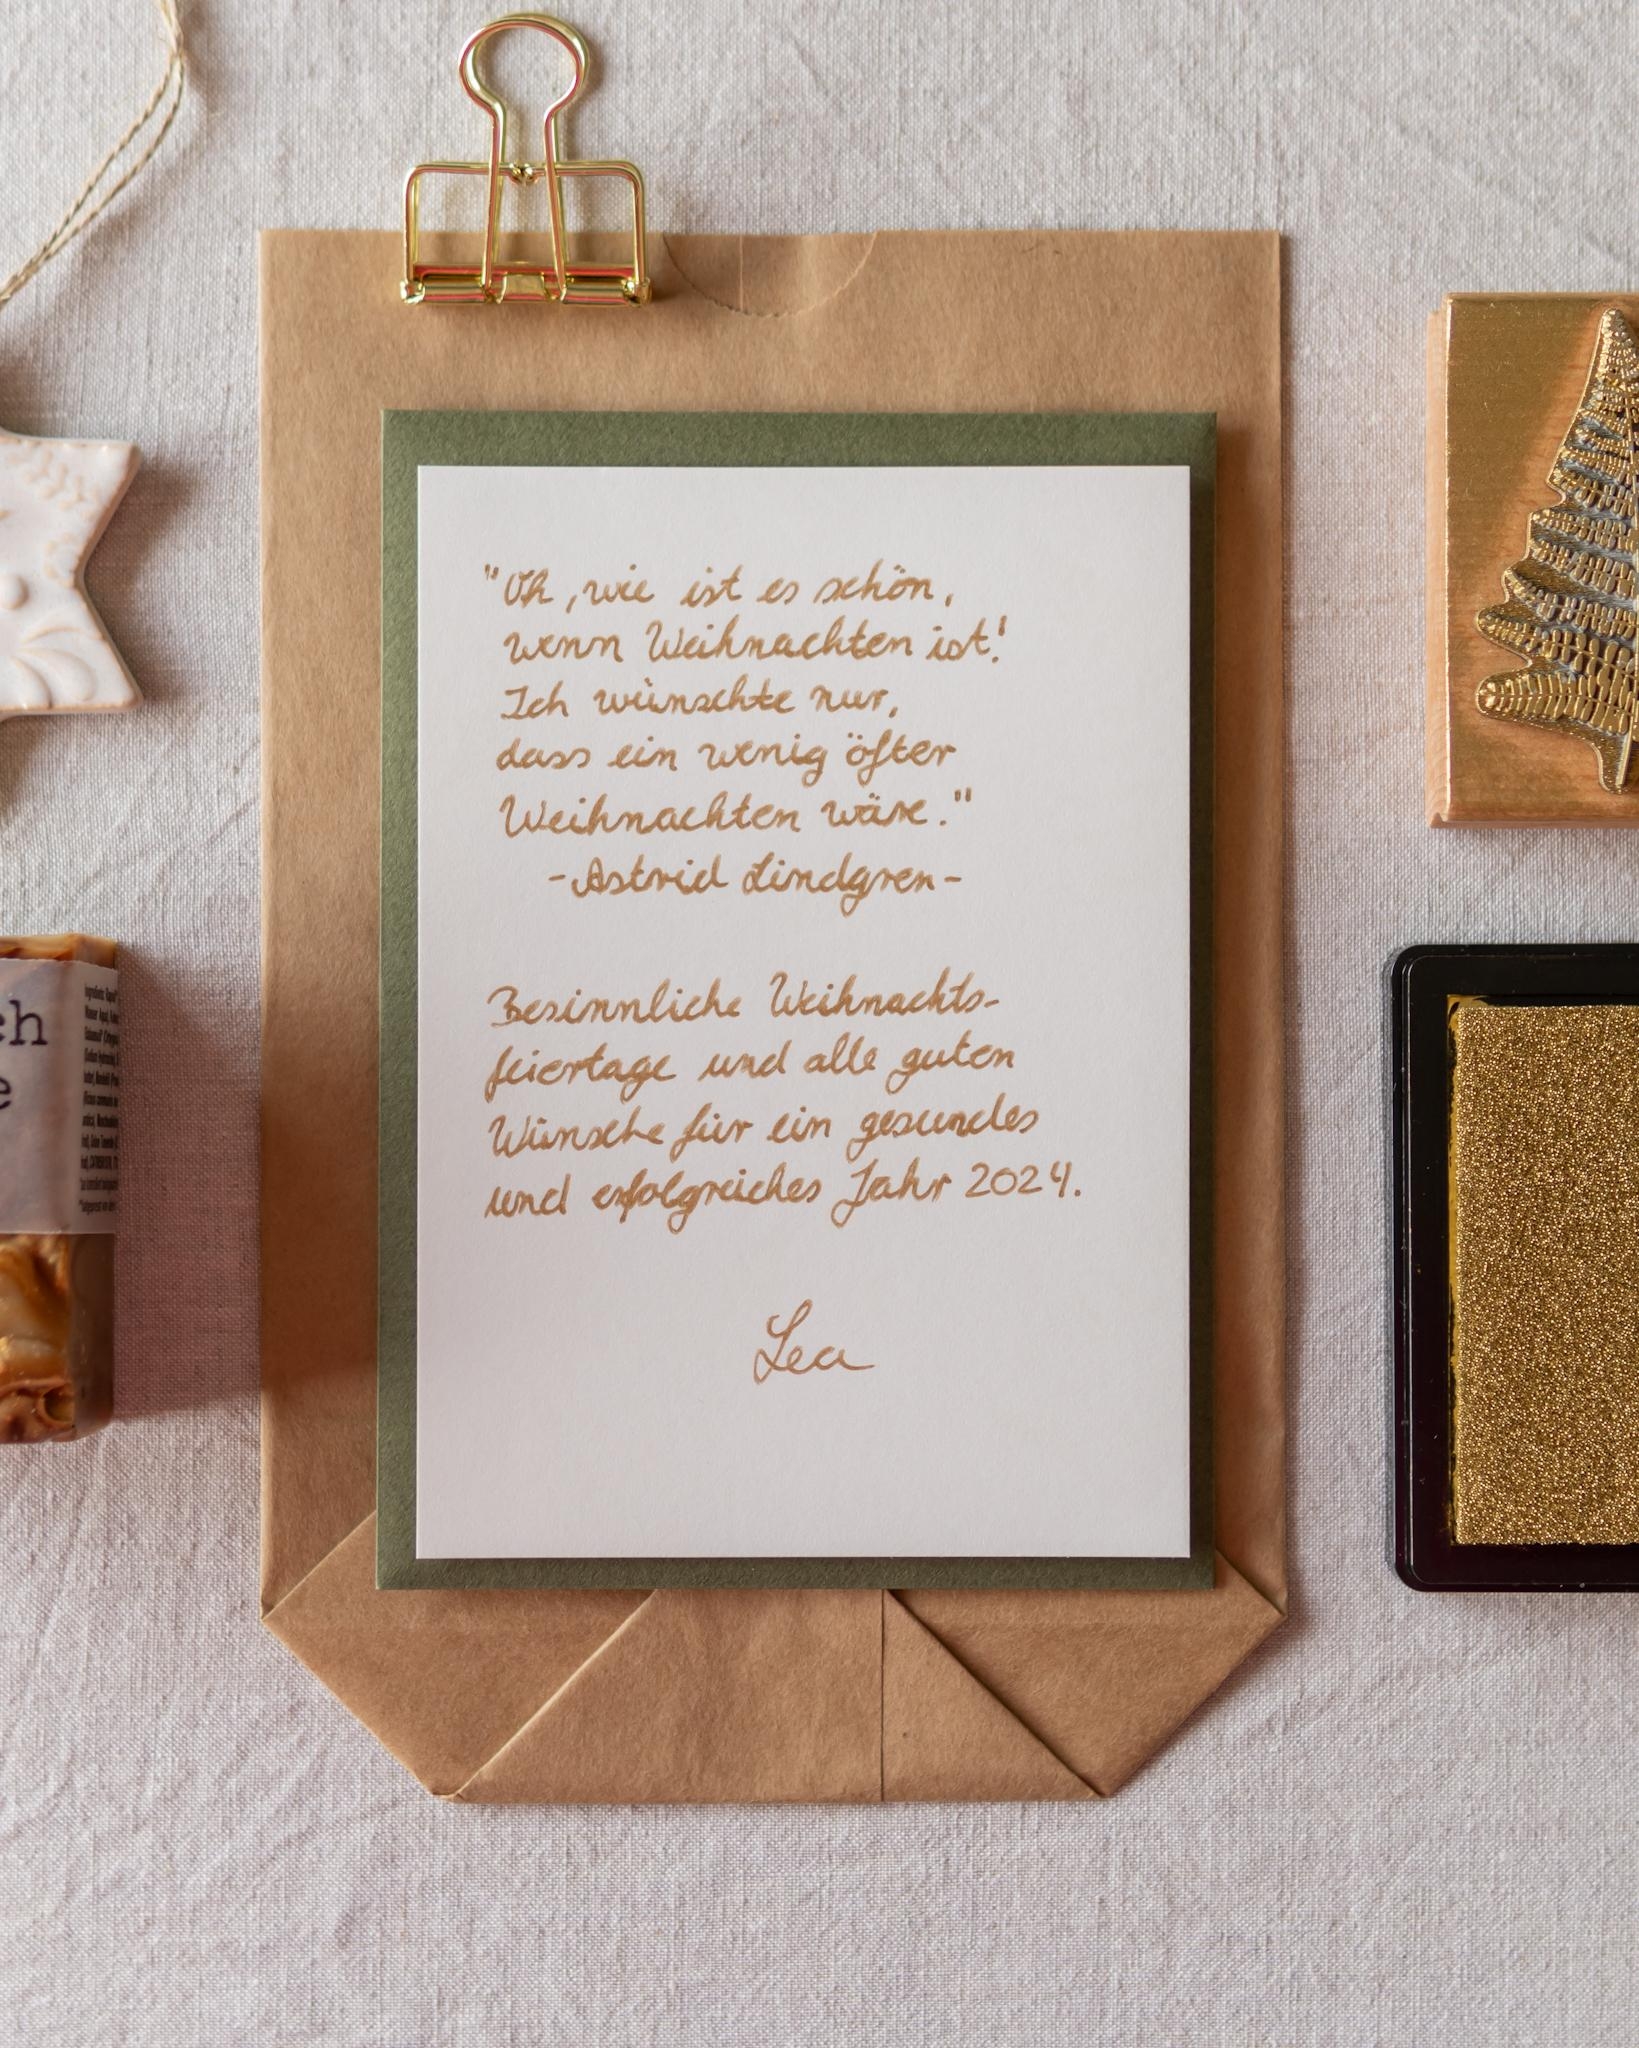 #weihnachtskarten #weihnachten #diy #giftwrapping #geschenkidee